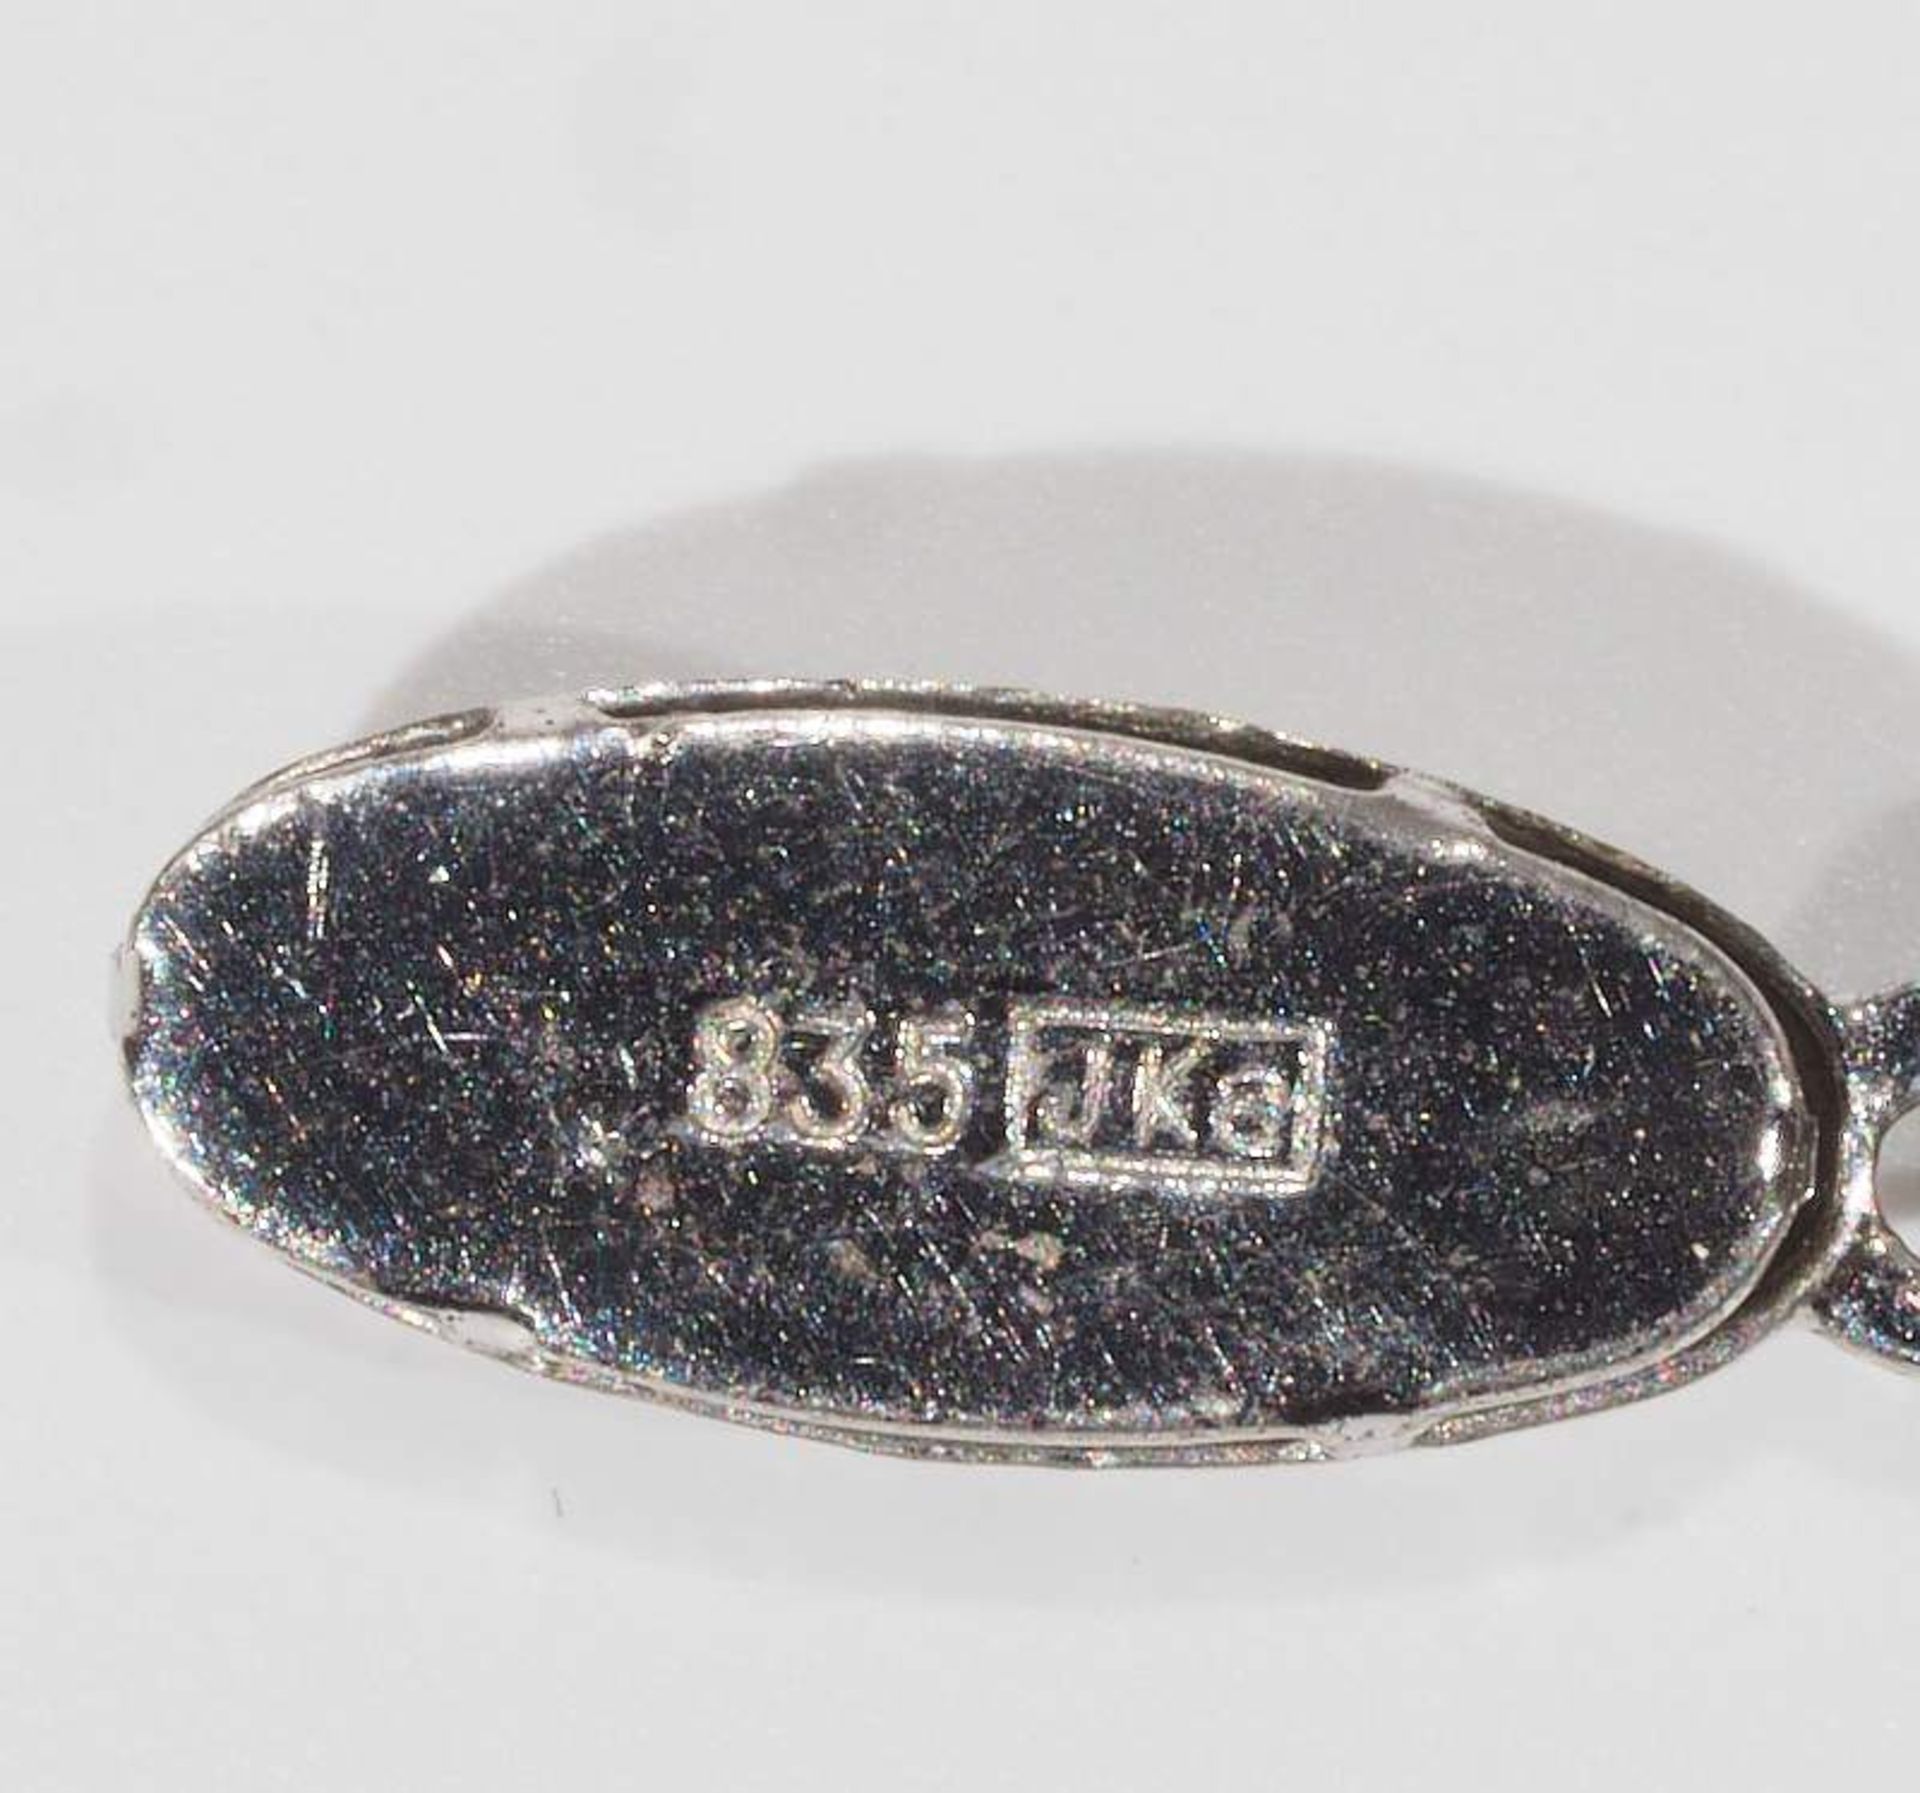 Akoya Zuchtperlenkette, einzeln verknotet. Ø der Perle ca. 6,7 mm, Länge der Kette ca. 46 cm. - Bild 6 aus 6